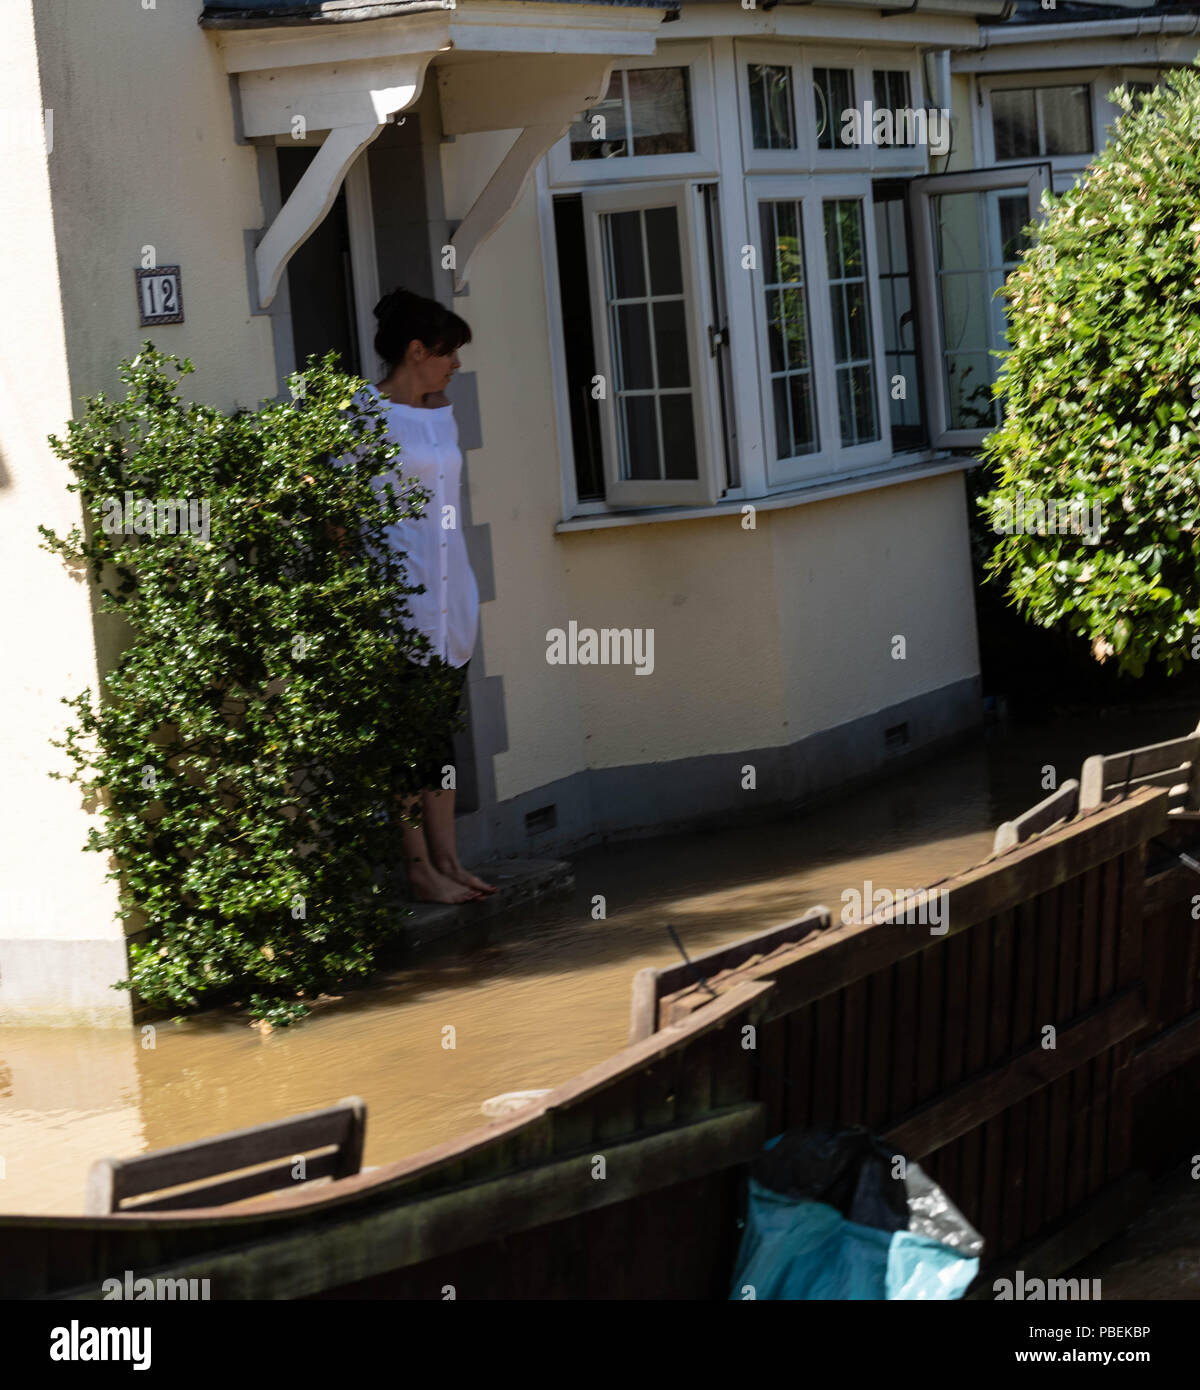 28. Juli 2018 Brentwood Essex, eine Wasserleitung platzte in Brentwood Essex Ursachen Überschwemmungen und Straße Chaos, lokale MP Alex Burghart visits die Szene Hilfe zu leisten. Frau Umfragen die Überschwemmung an ihrem Haus. Kredit Ian Davidson/Alamy leben Nachrichten Stockfoto